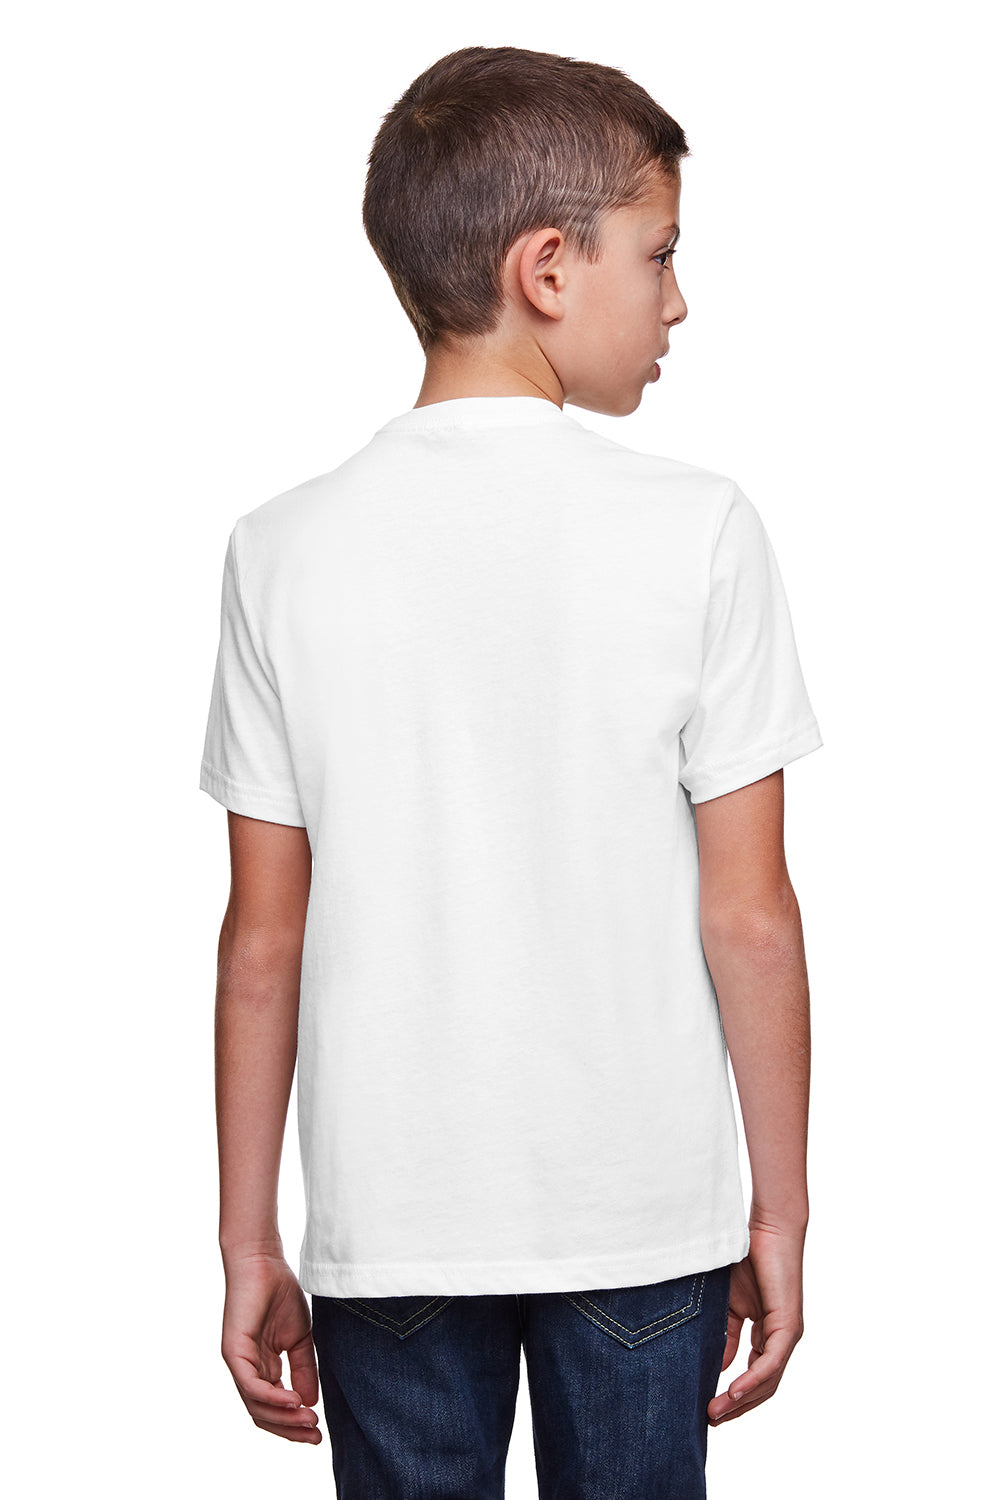 Next Level 4212 Youth Eco Performance Moisture Wicking Short Sleeve Crewneck T-Shirt White Back